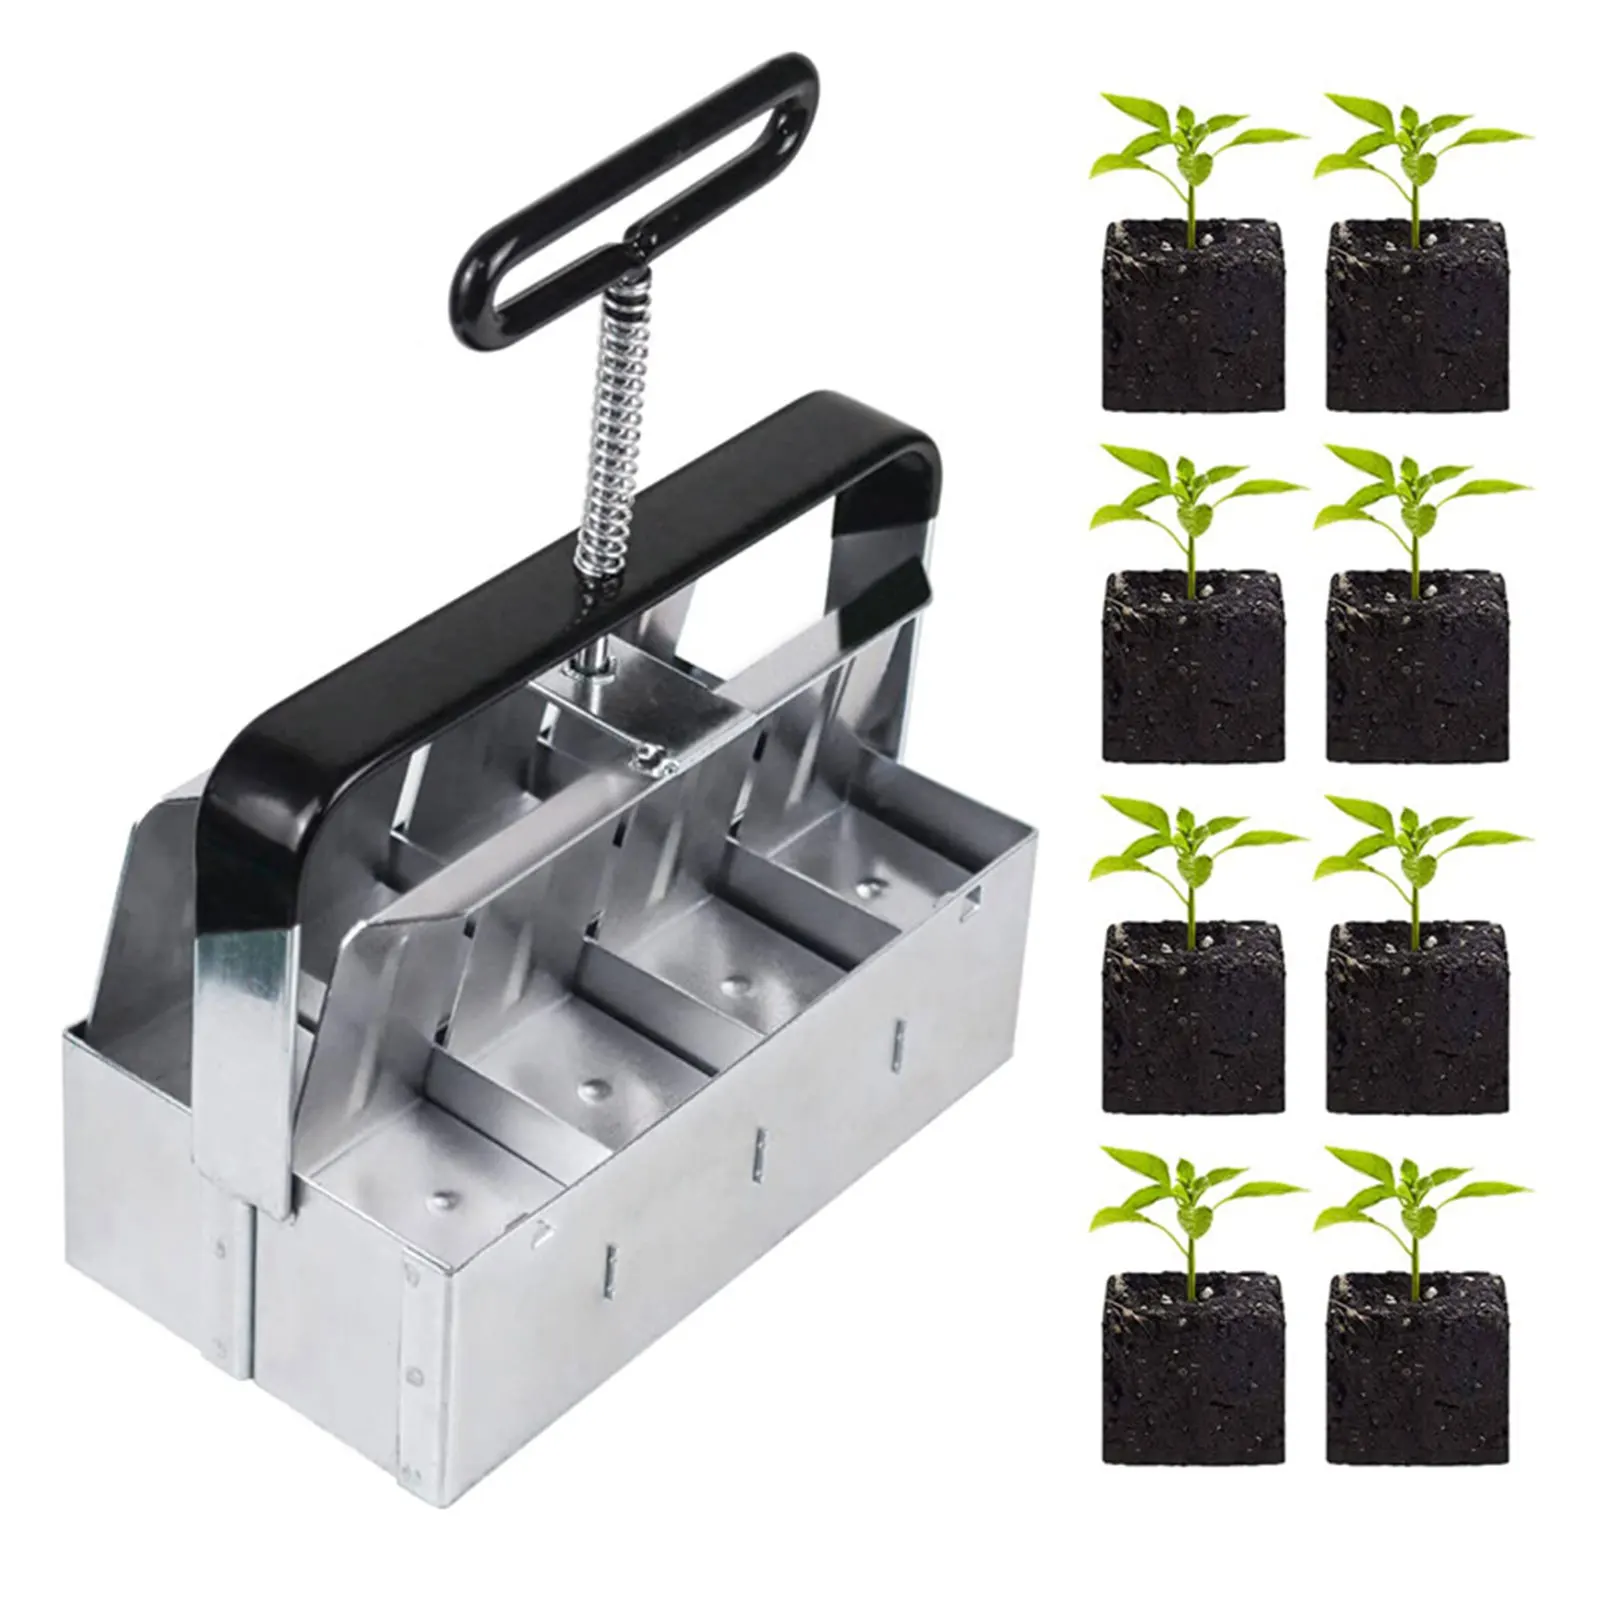 Handheld Seeding Soil Blocker  Soil Block Maker Create 8pcs 2inch Soil Blocks For Seed Starter Block Maker